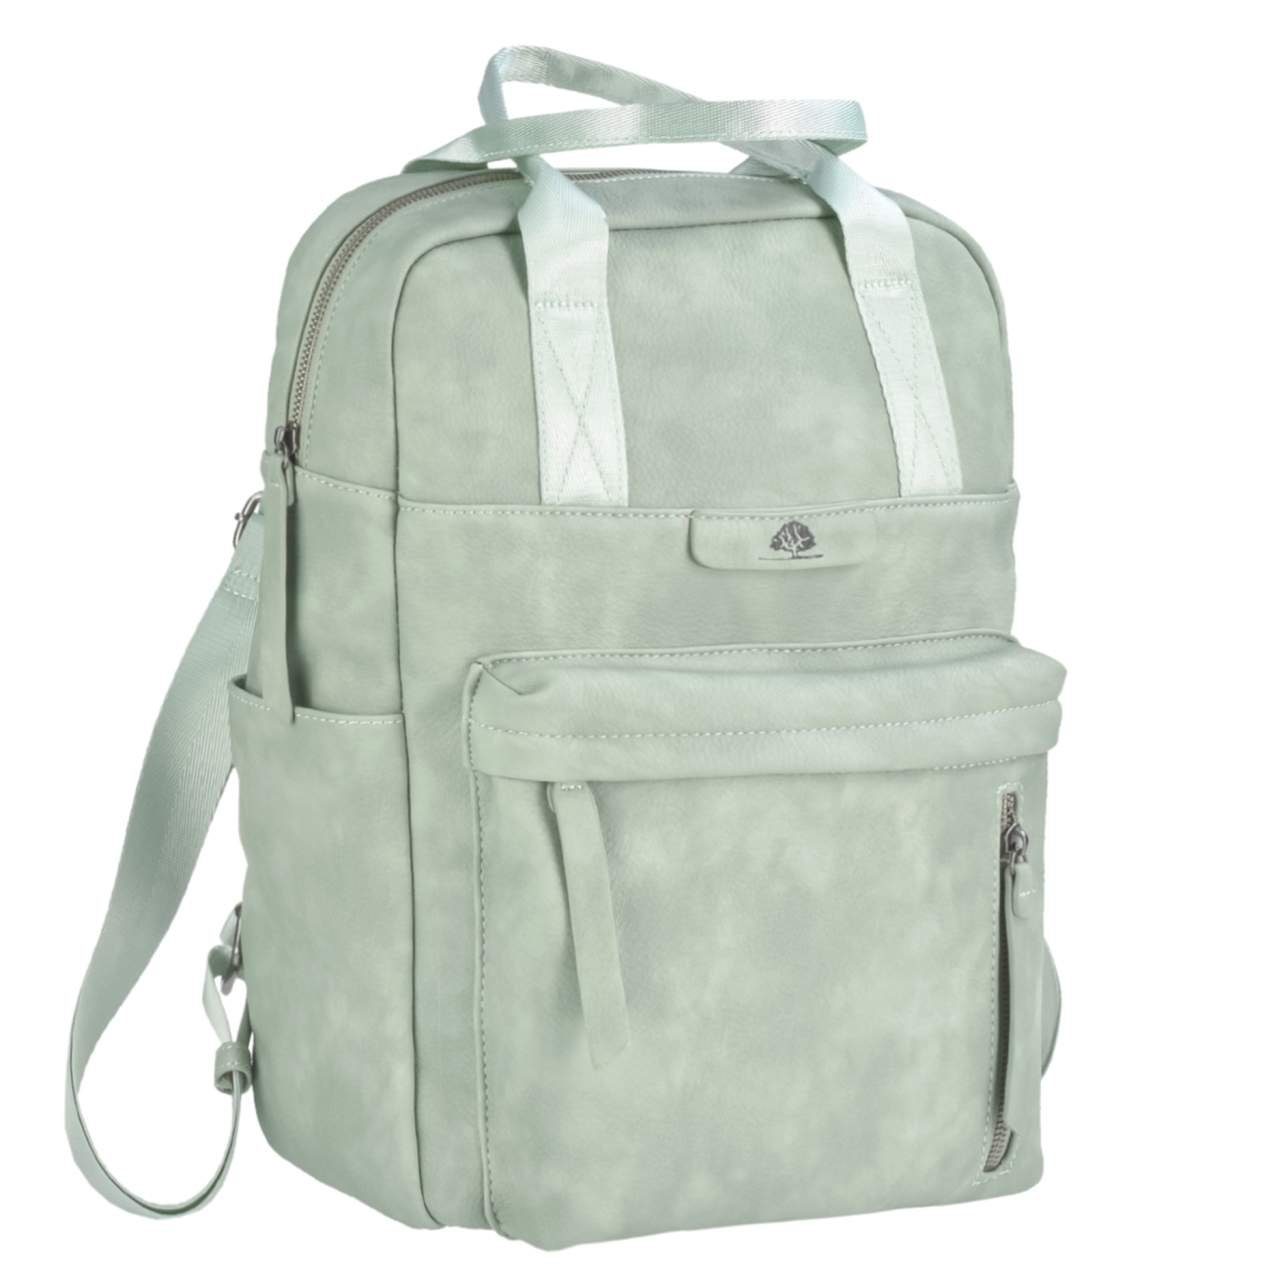 Dasch, mit Damenrucksack Tagesrucksack, mint Notebookfach, Freizeitrucksack TONI Mad'l 30x40cm Greenburry Daypack